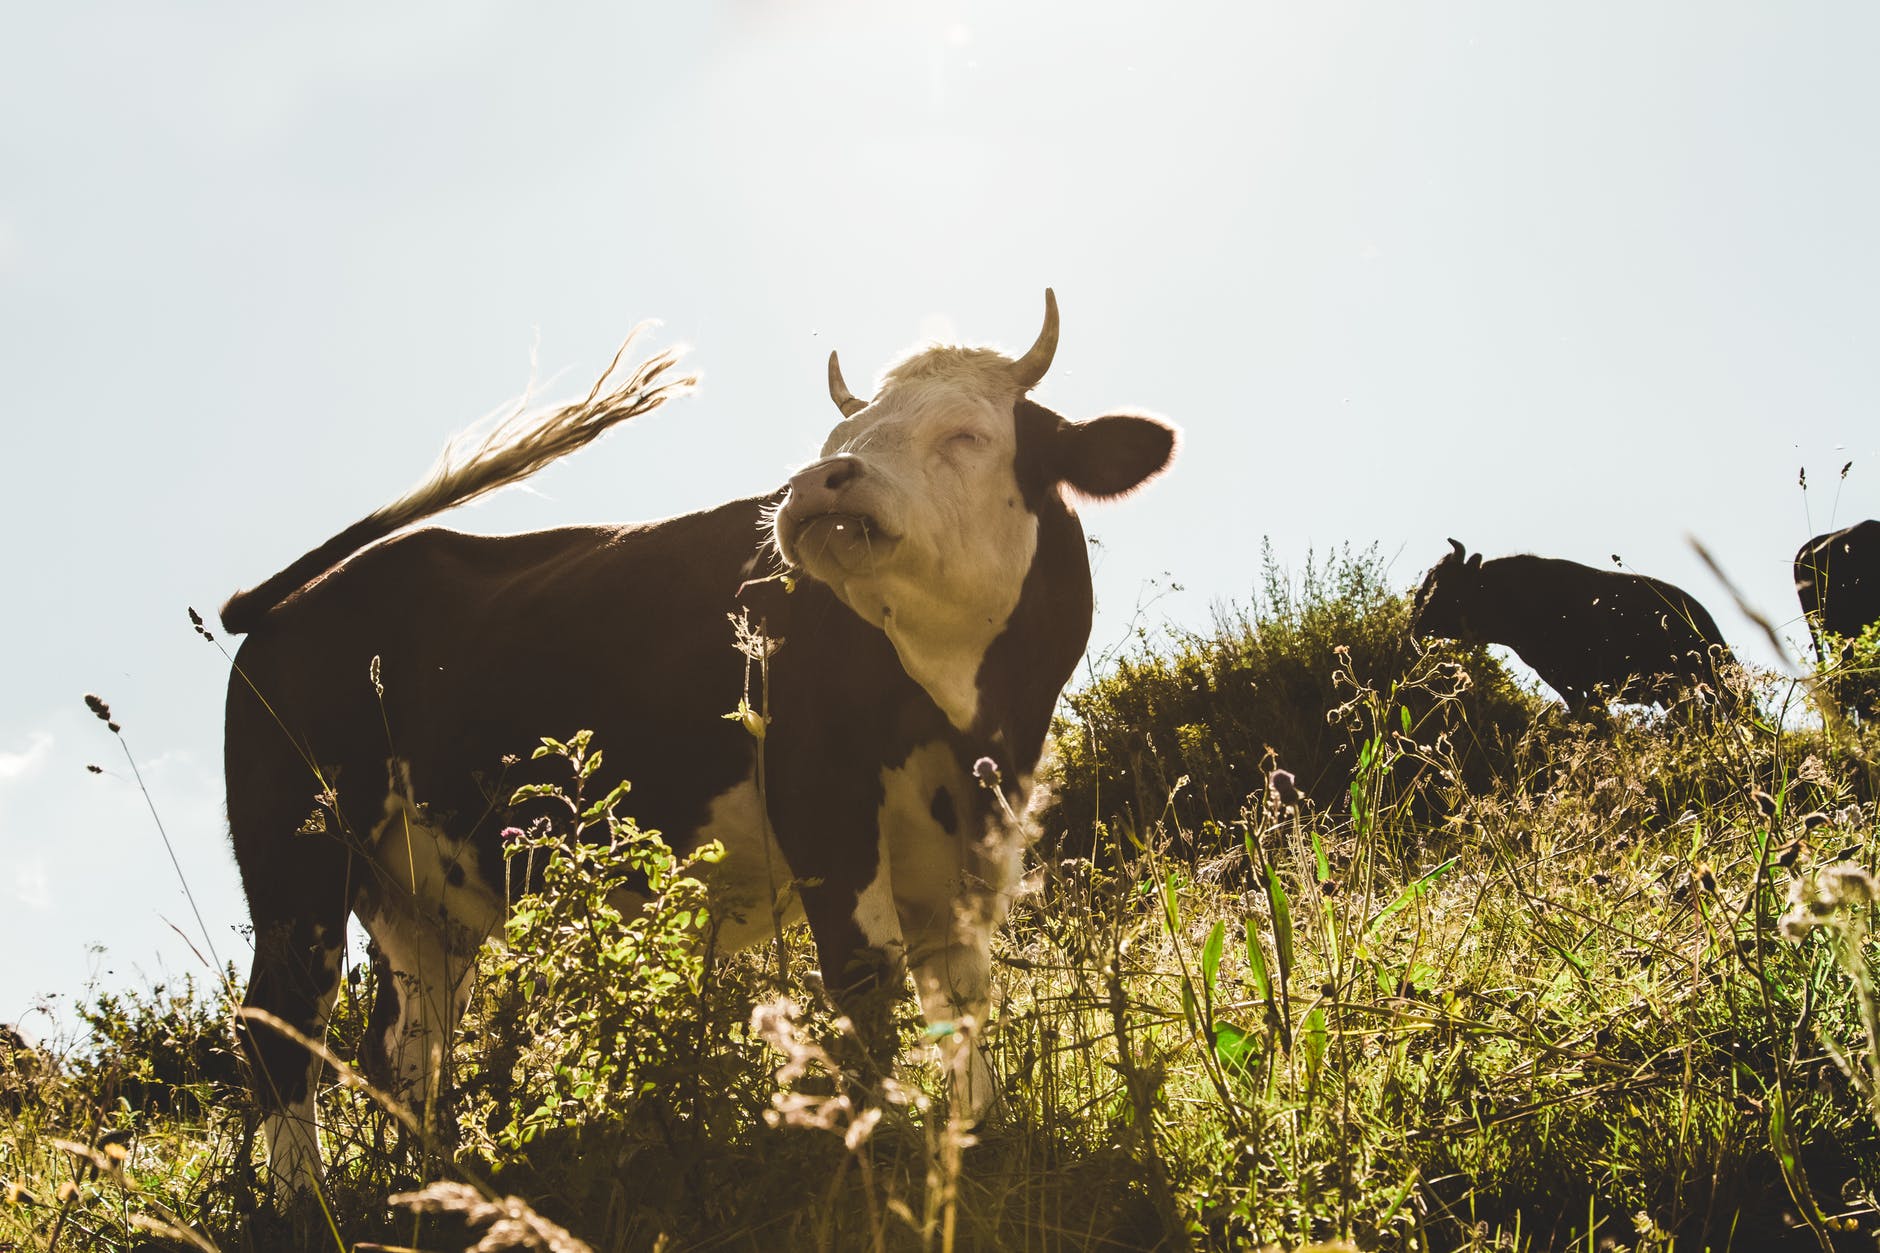 brown and white cow on grassfield, richtig italienisch sprechen